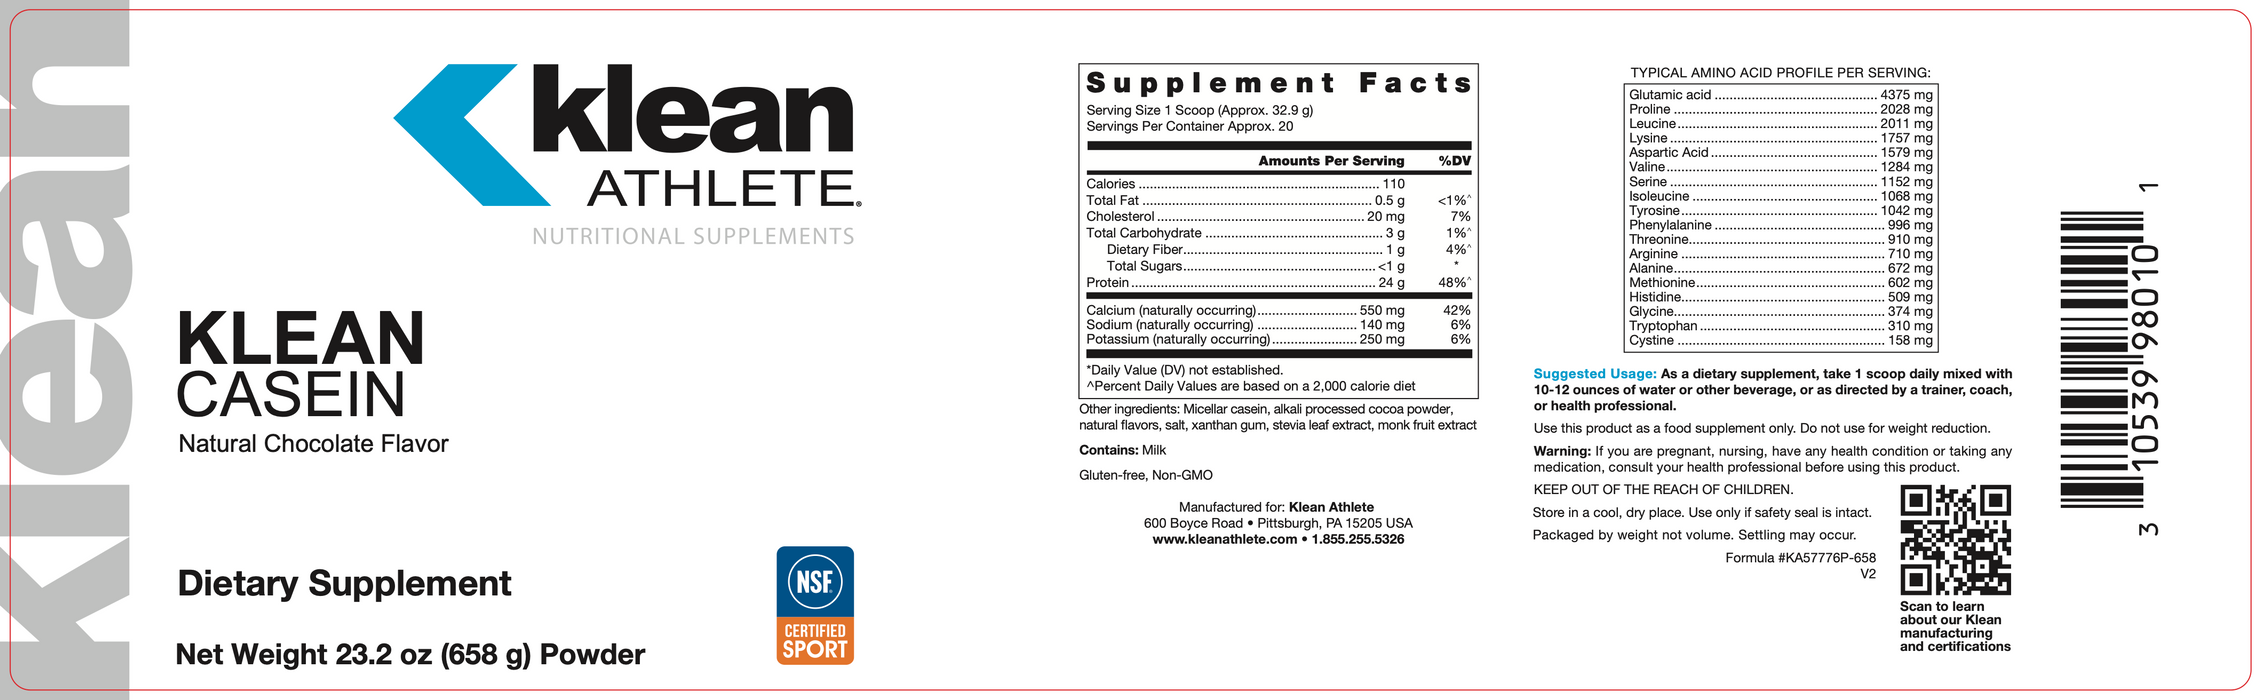 Klean Casein Protein (20 Servings)-Vitamins & Supplements-Klean Athlete-Natural Vanilla Custard-Pine Street Clinic